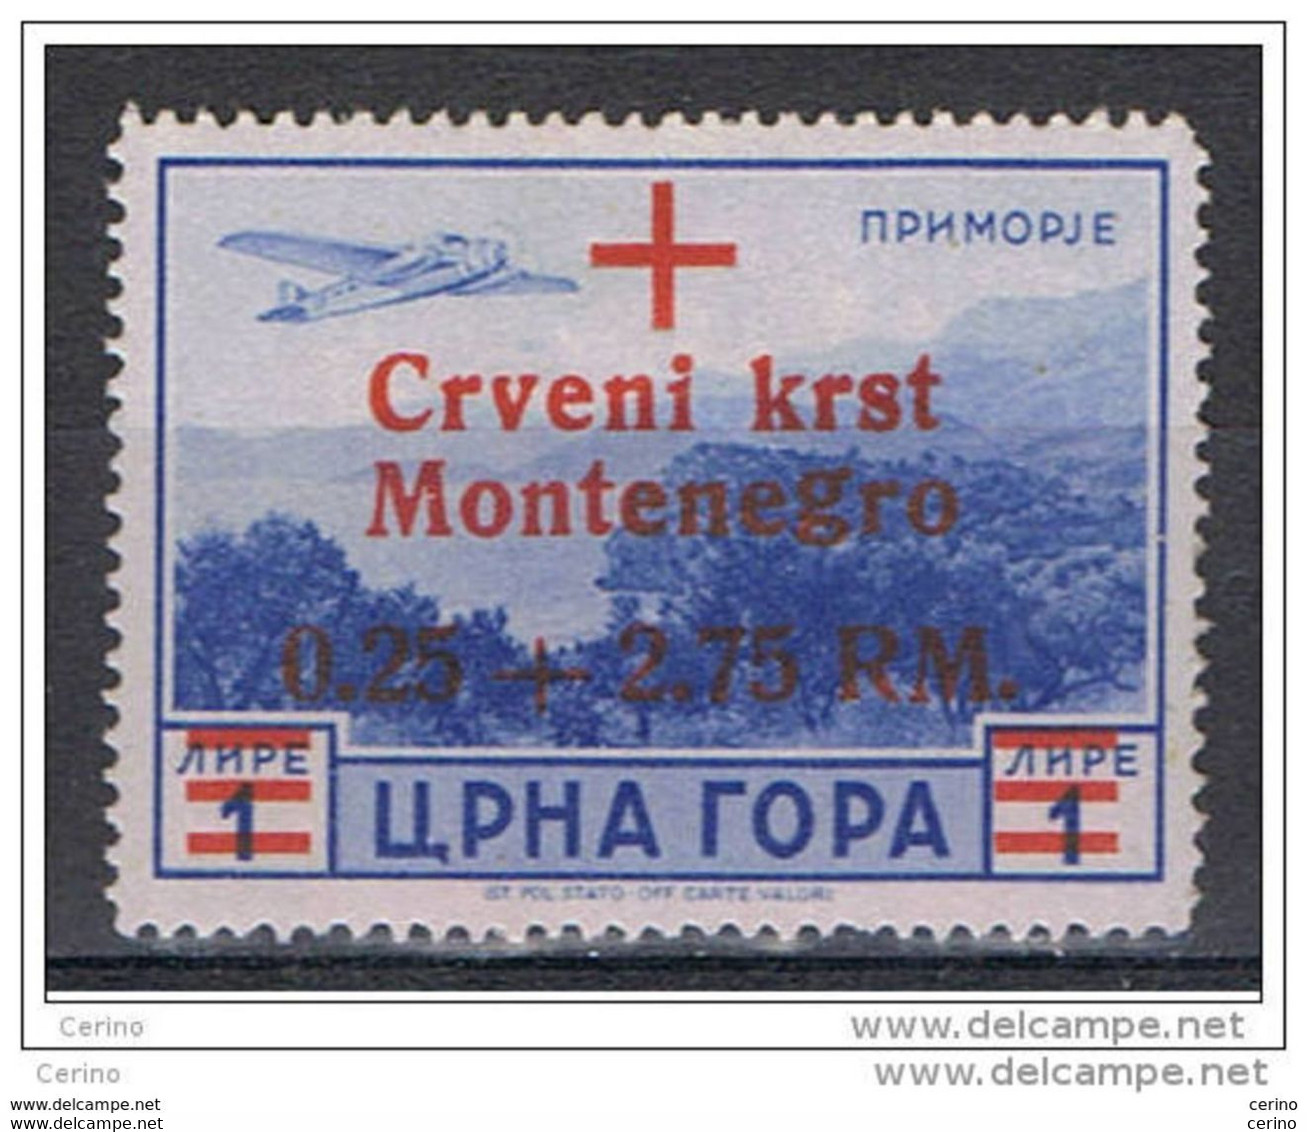 MONTENEGRO - OCCUPAZ. TEDESCA:  1944  P.A. SOPRASTAMPATO  -  0,25 + 2,75 Rm./£. 1  AZZURRO  N. -  SASS. A10 - Occ. Allemande: Montenegro